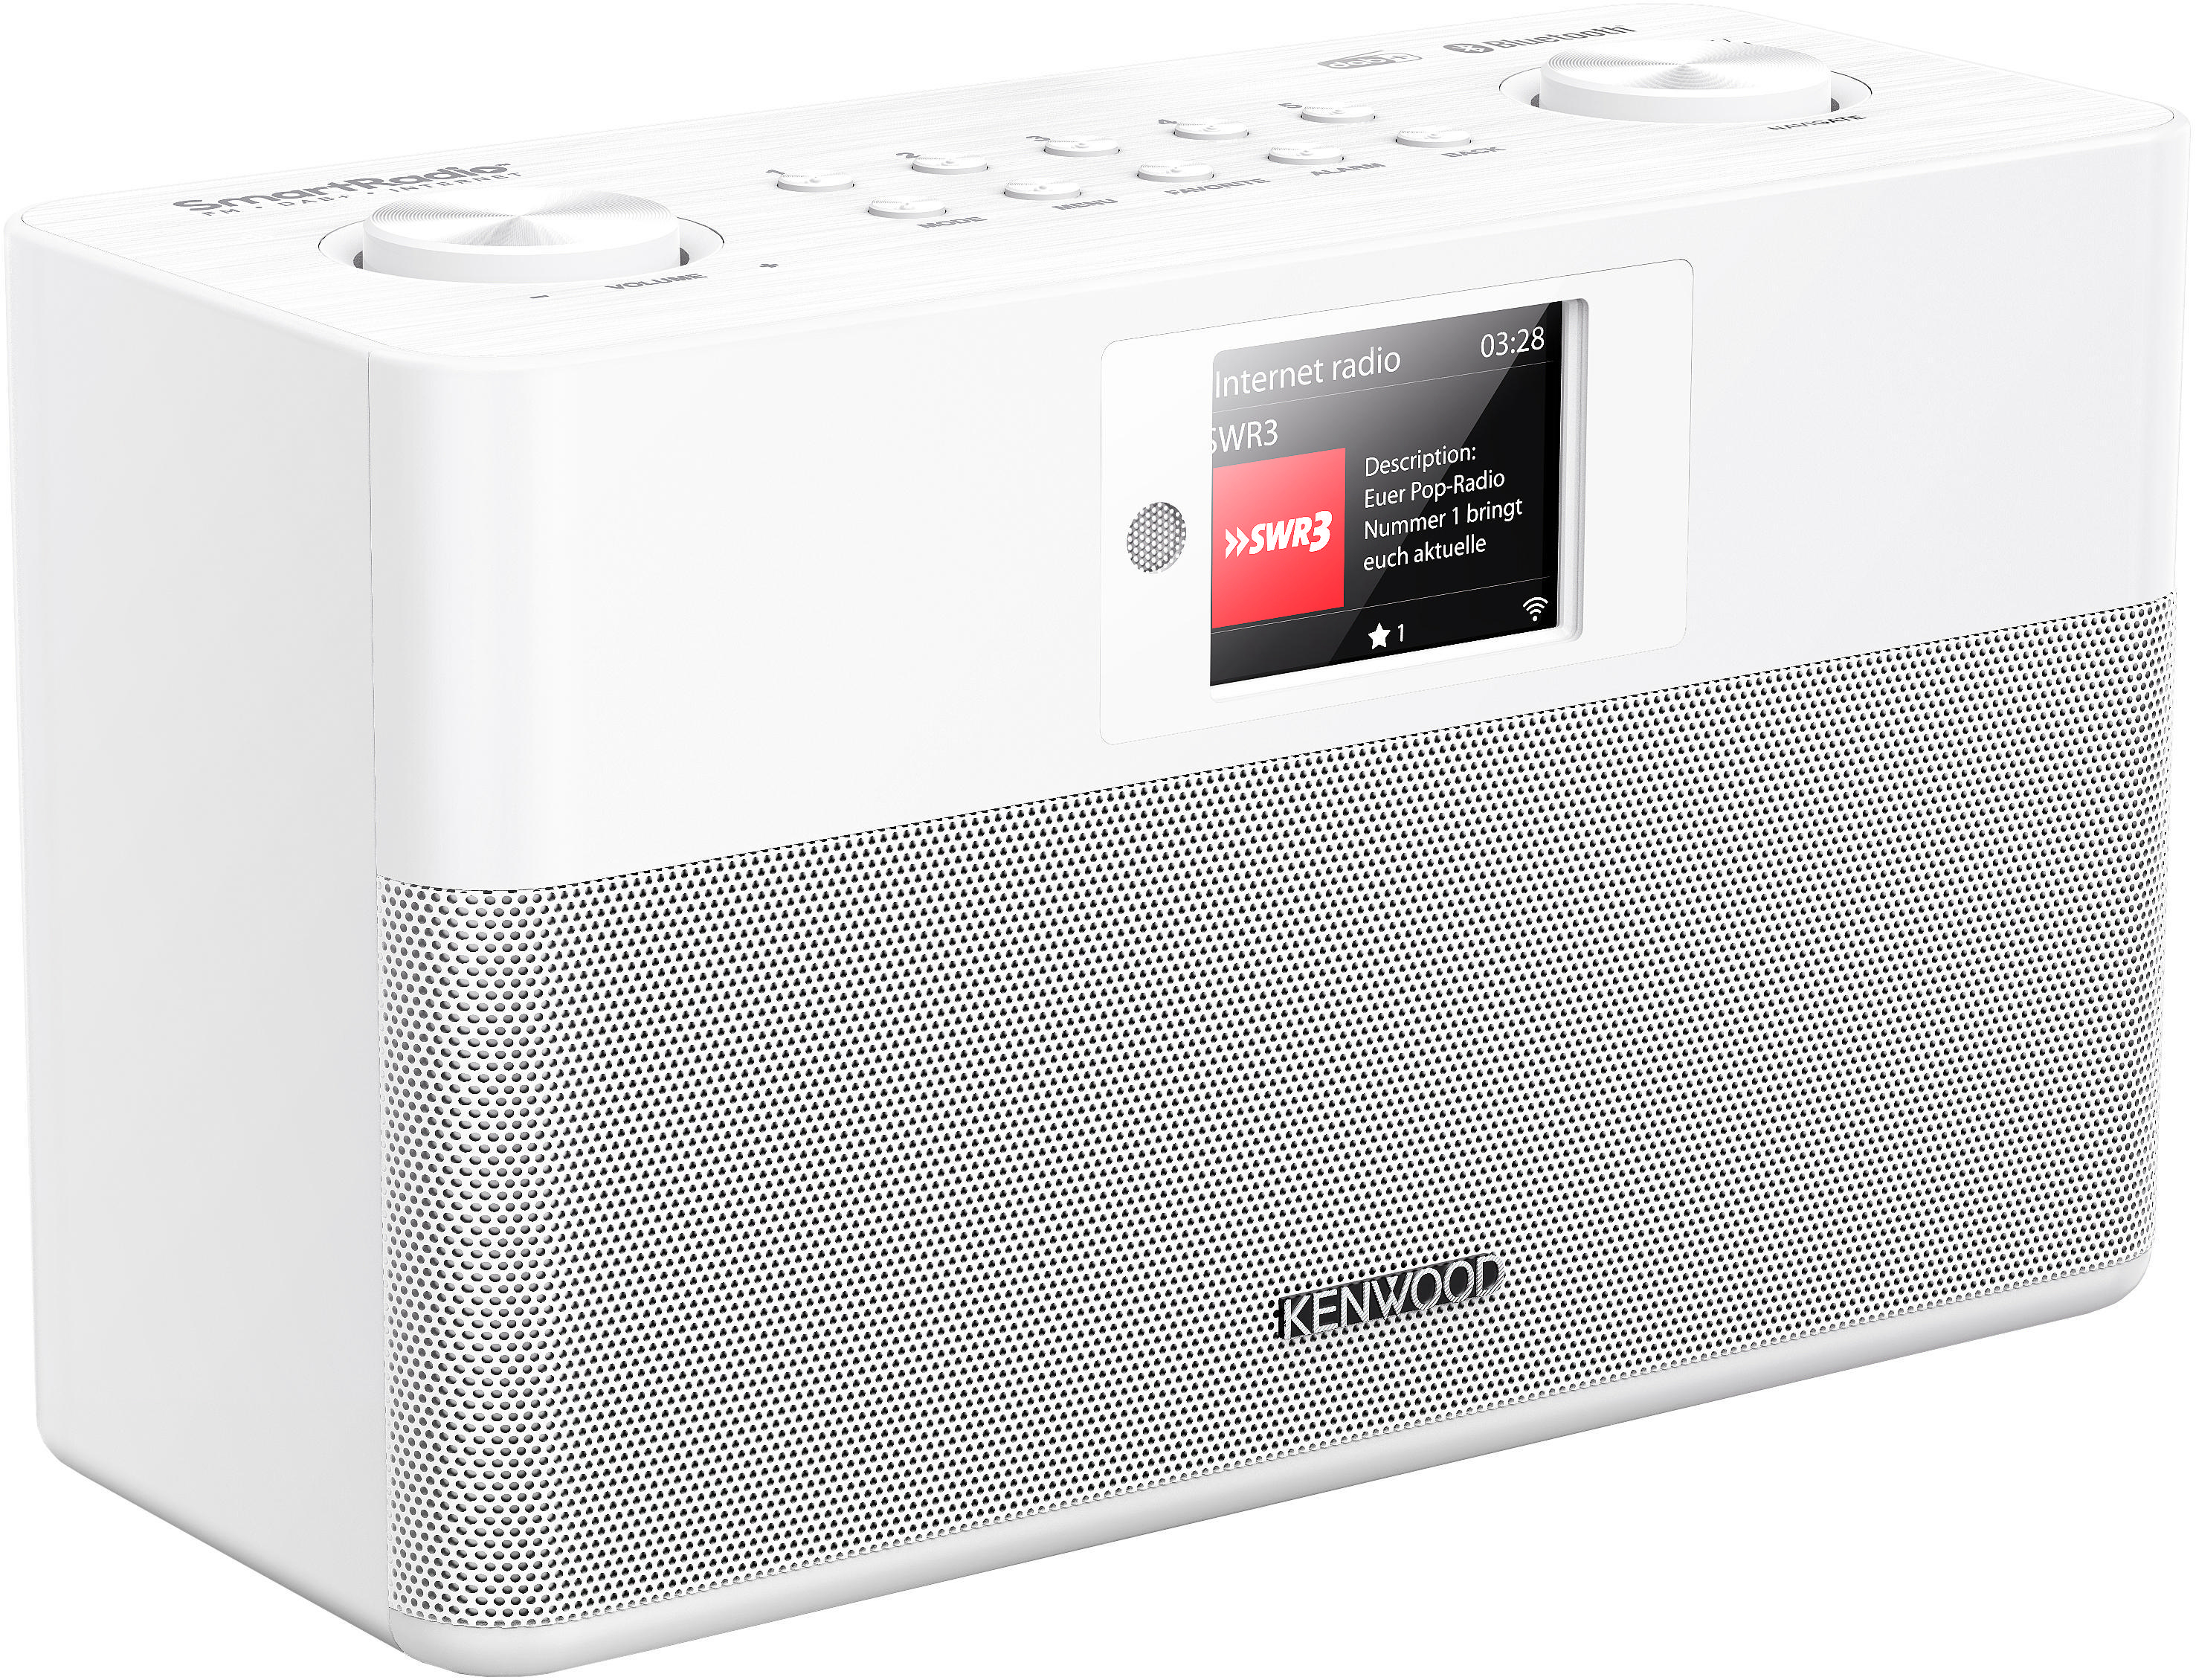 KENWOOD CR-ST100S-W Internetradio, DAB+, FM, Radio, Bluetooth, Weiß Internet